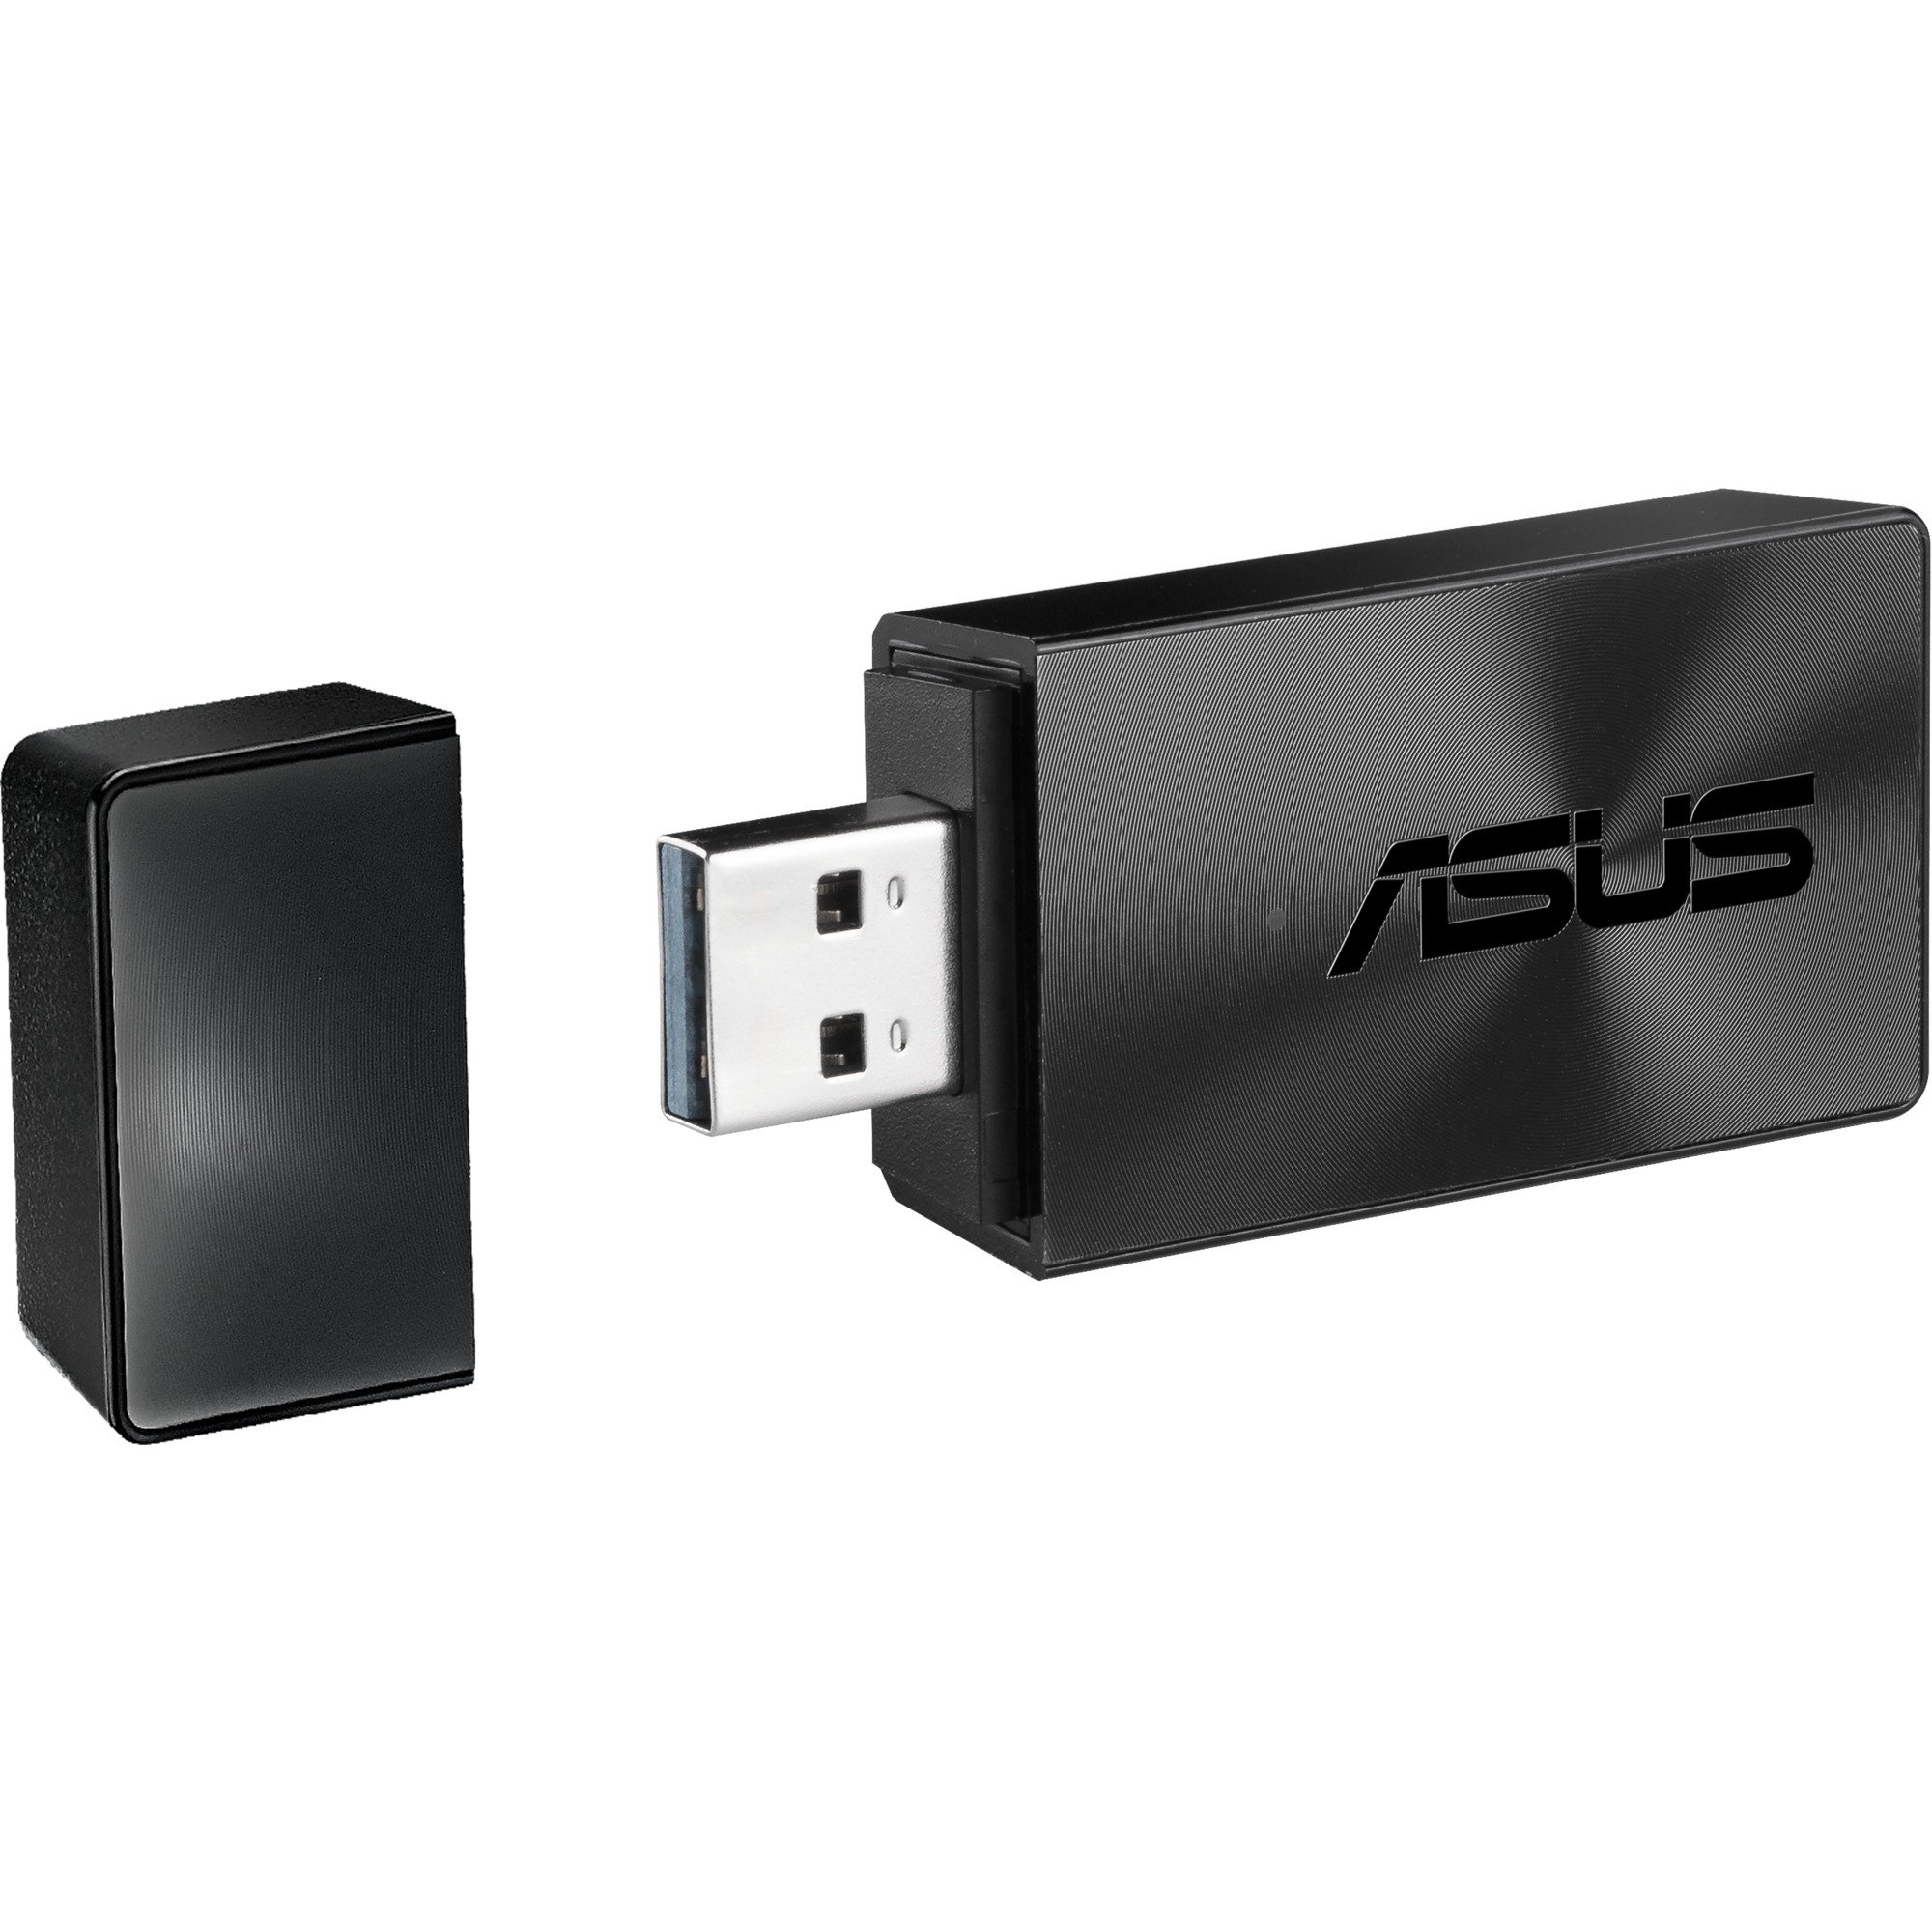 USB-AC54_B1 WLAN 1300 Mbit/s, Adapter WLAN